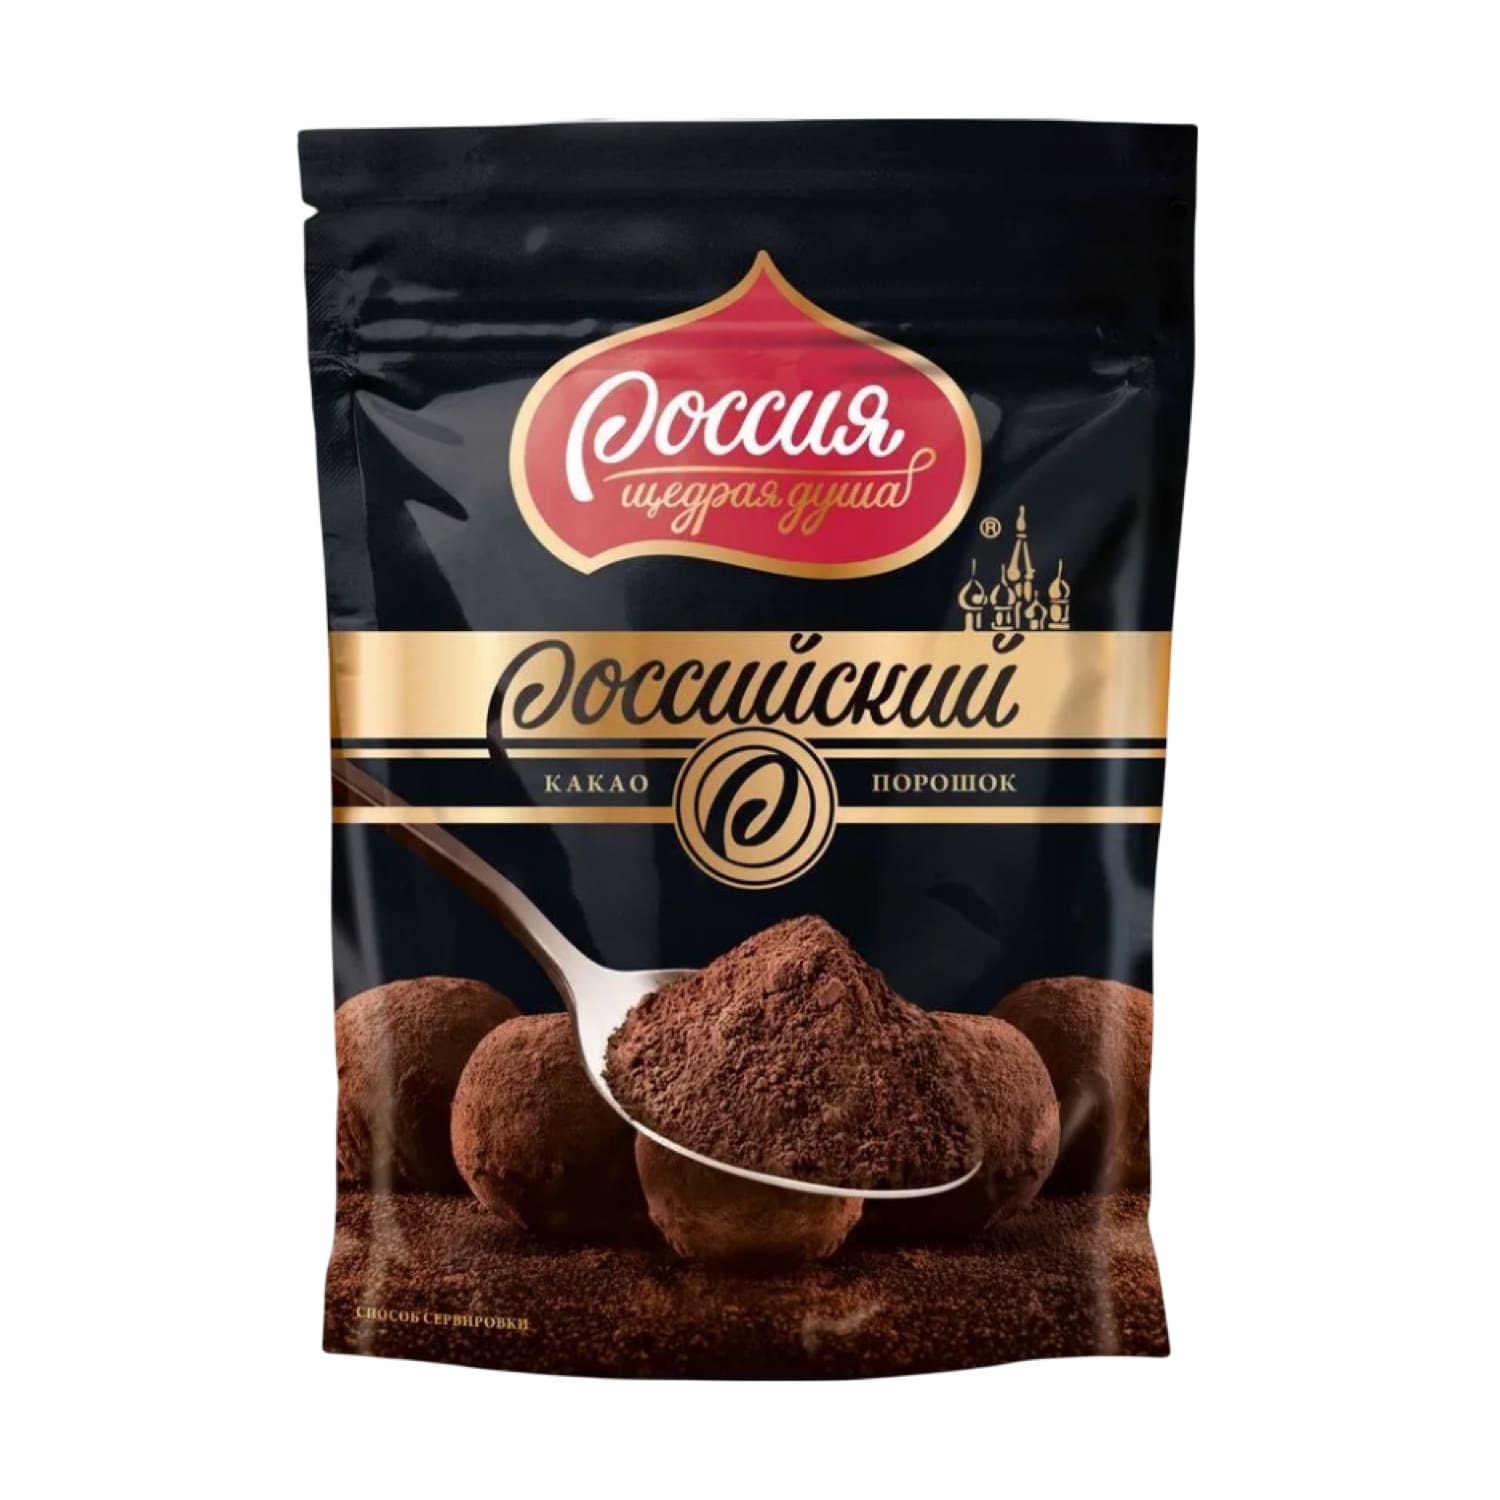 Какао-порошок Российский 100г